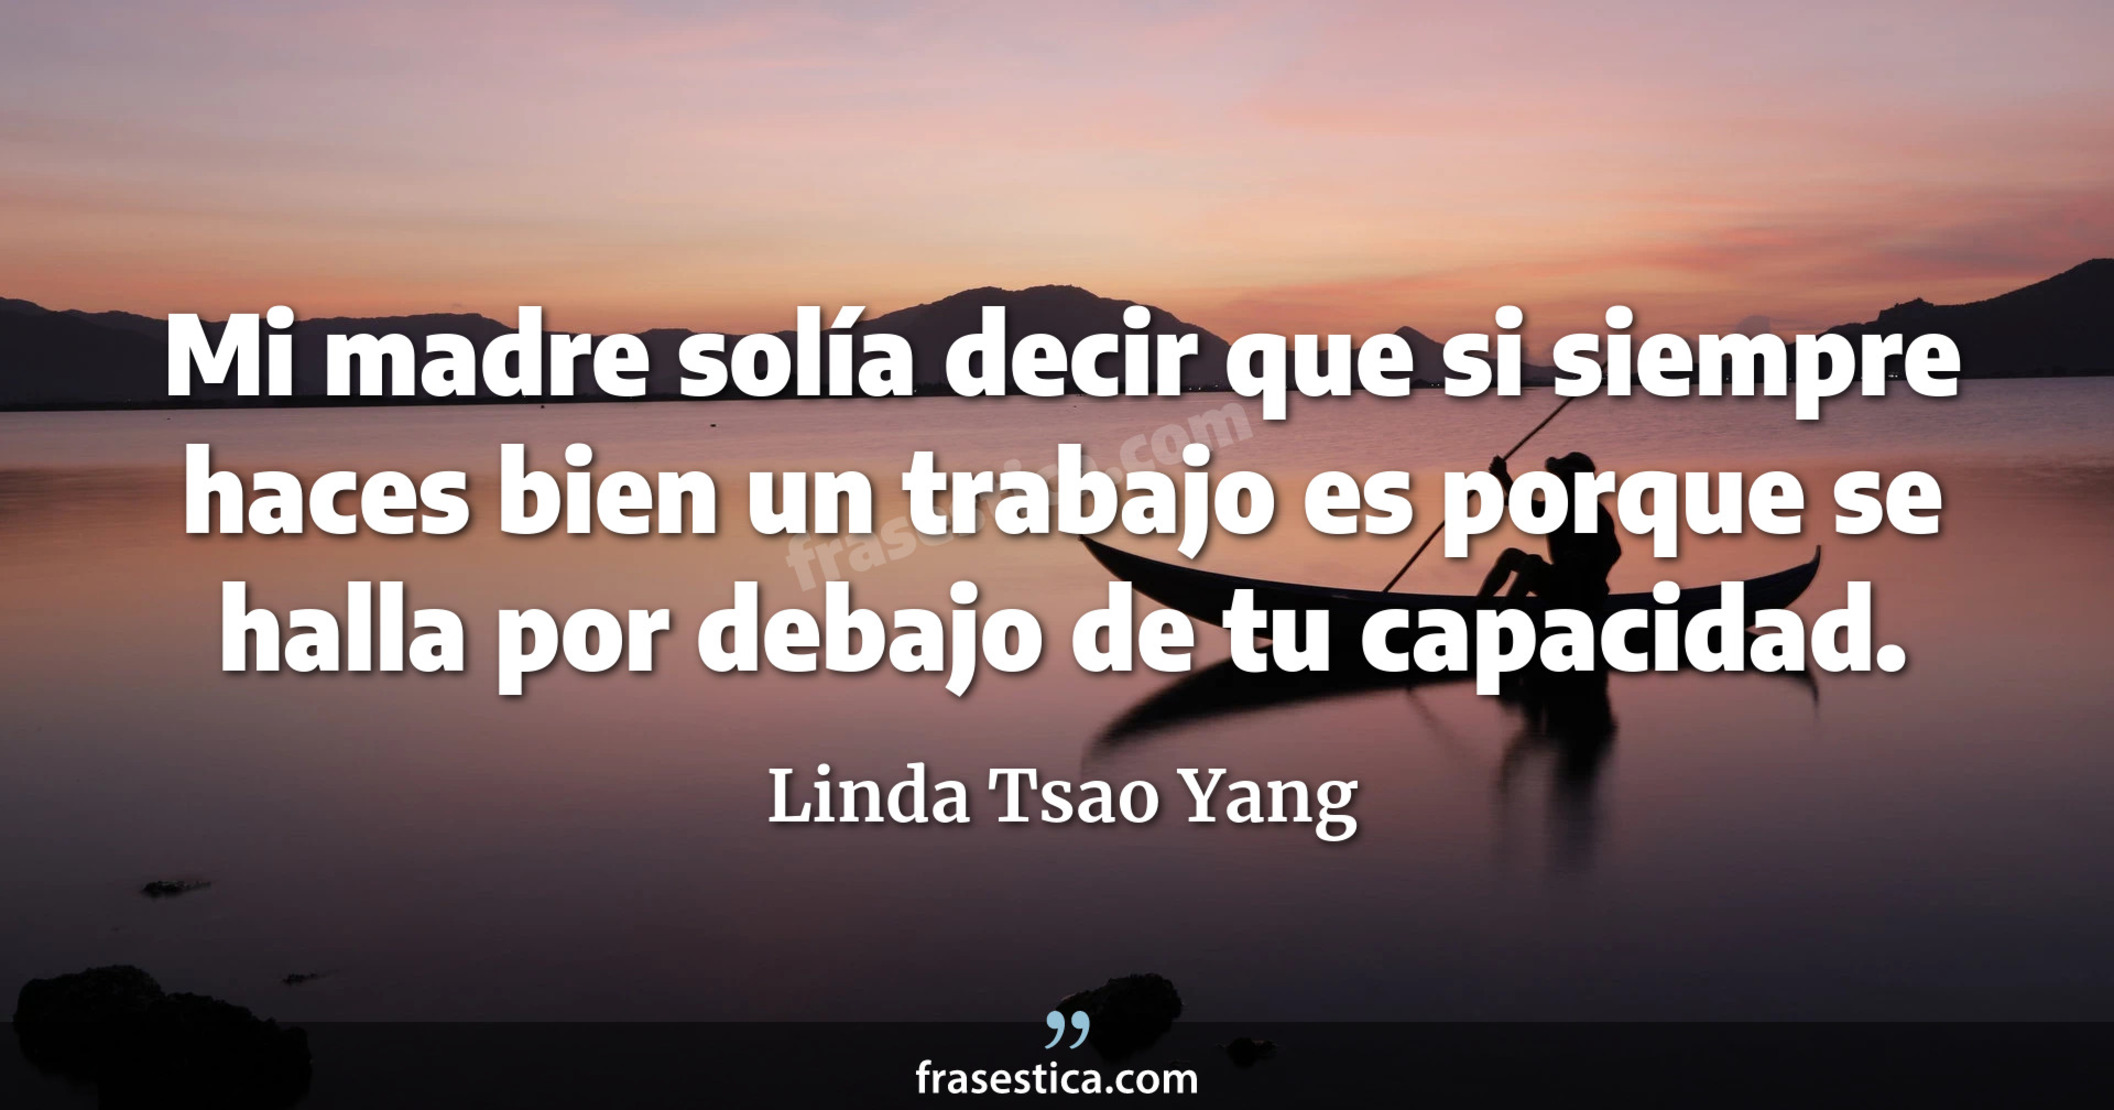 Mi madre solía decir que si siempre haces bien un trabajo es porque se halla por debajo de tu capacidad. - Linda Tsao Yang